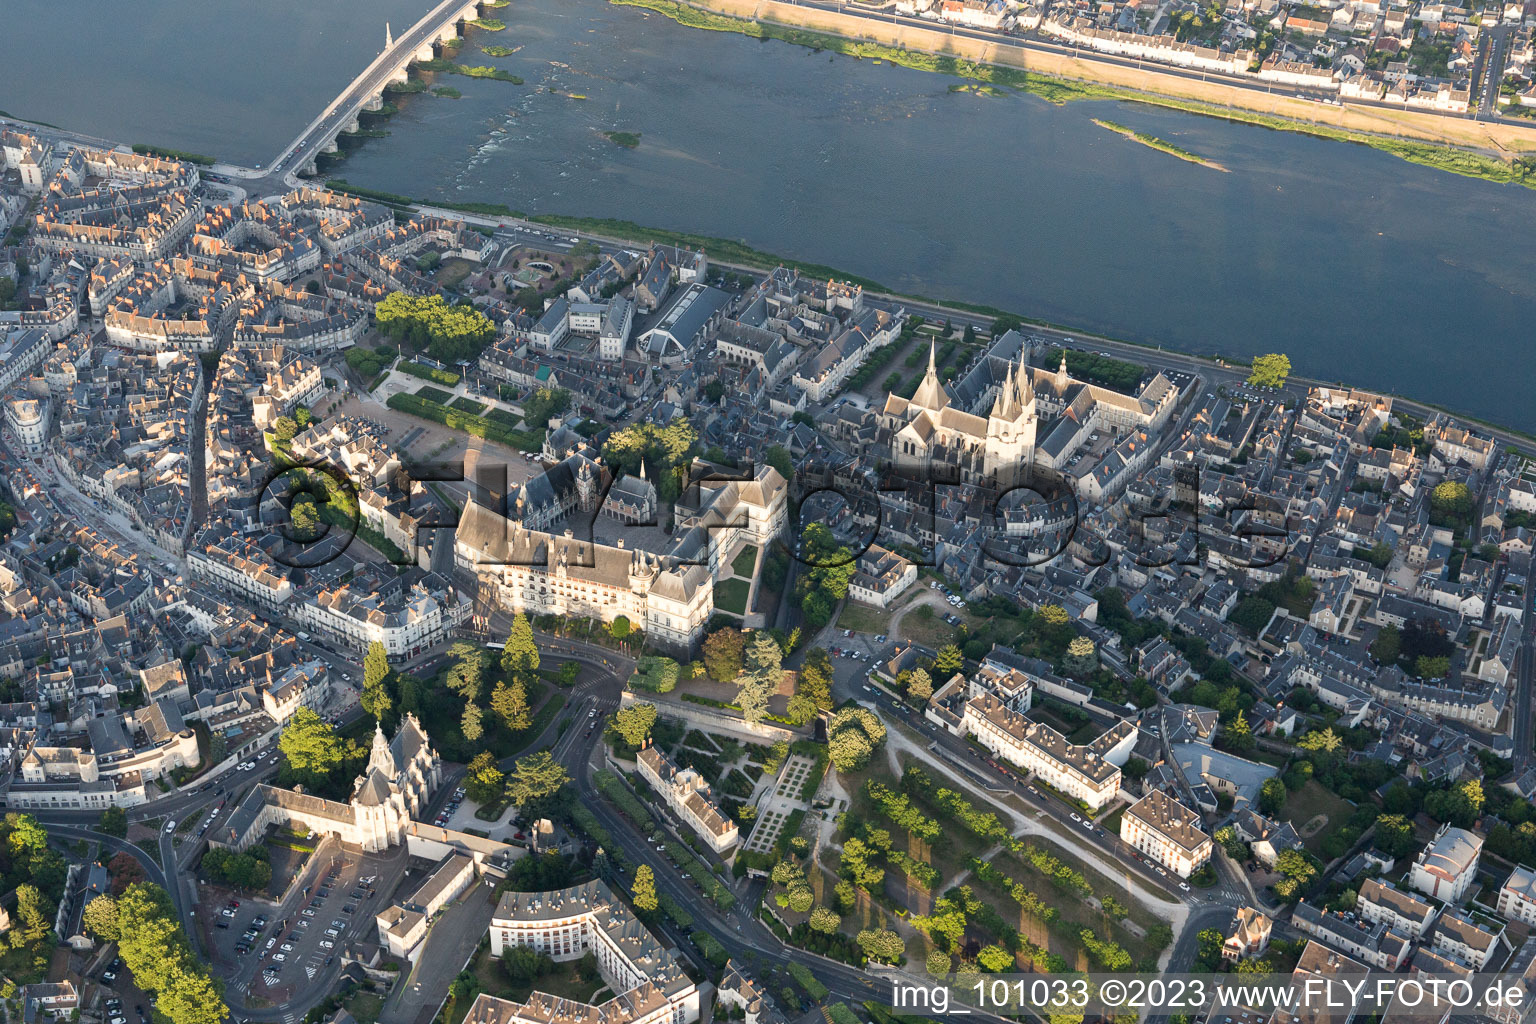 Blois im Bundesland Loir-et-Cher, Frankreich aus der Luft